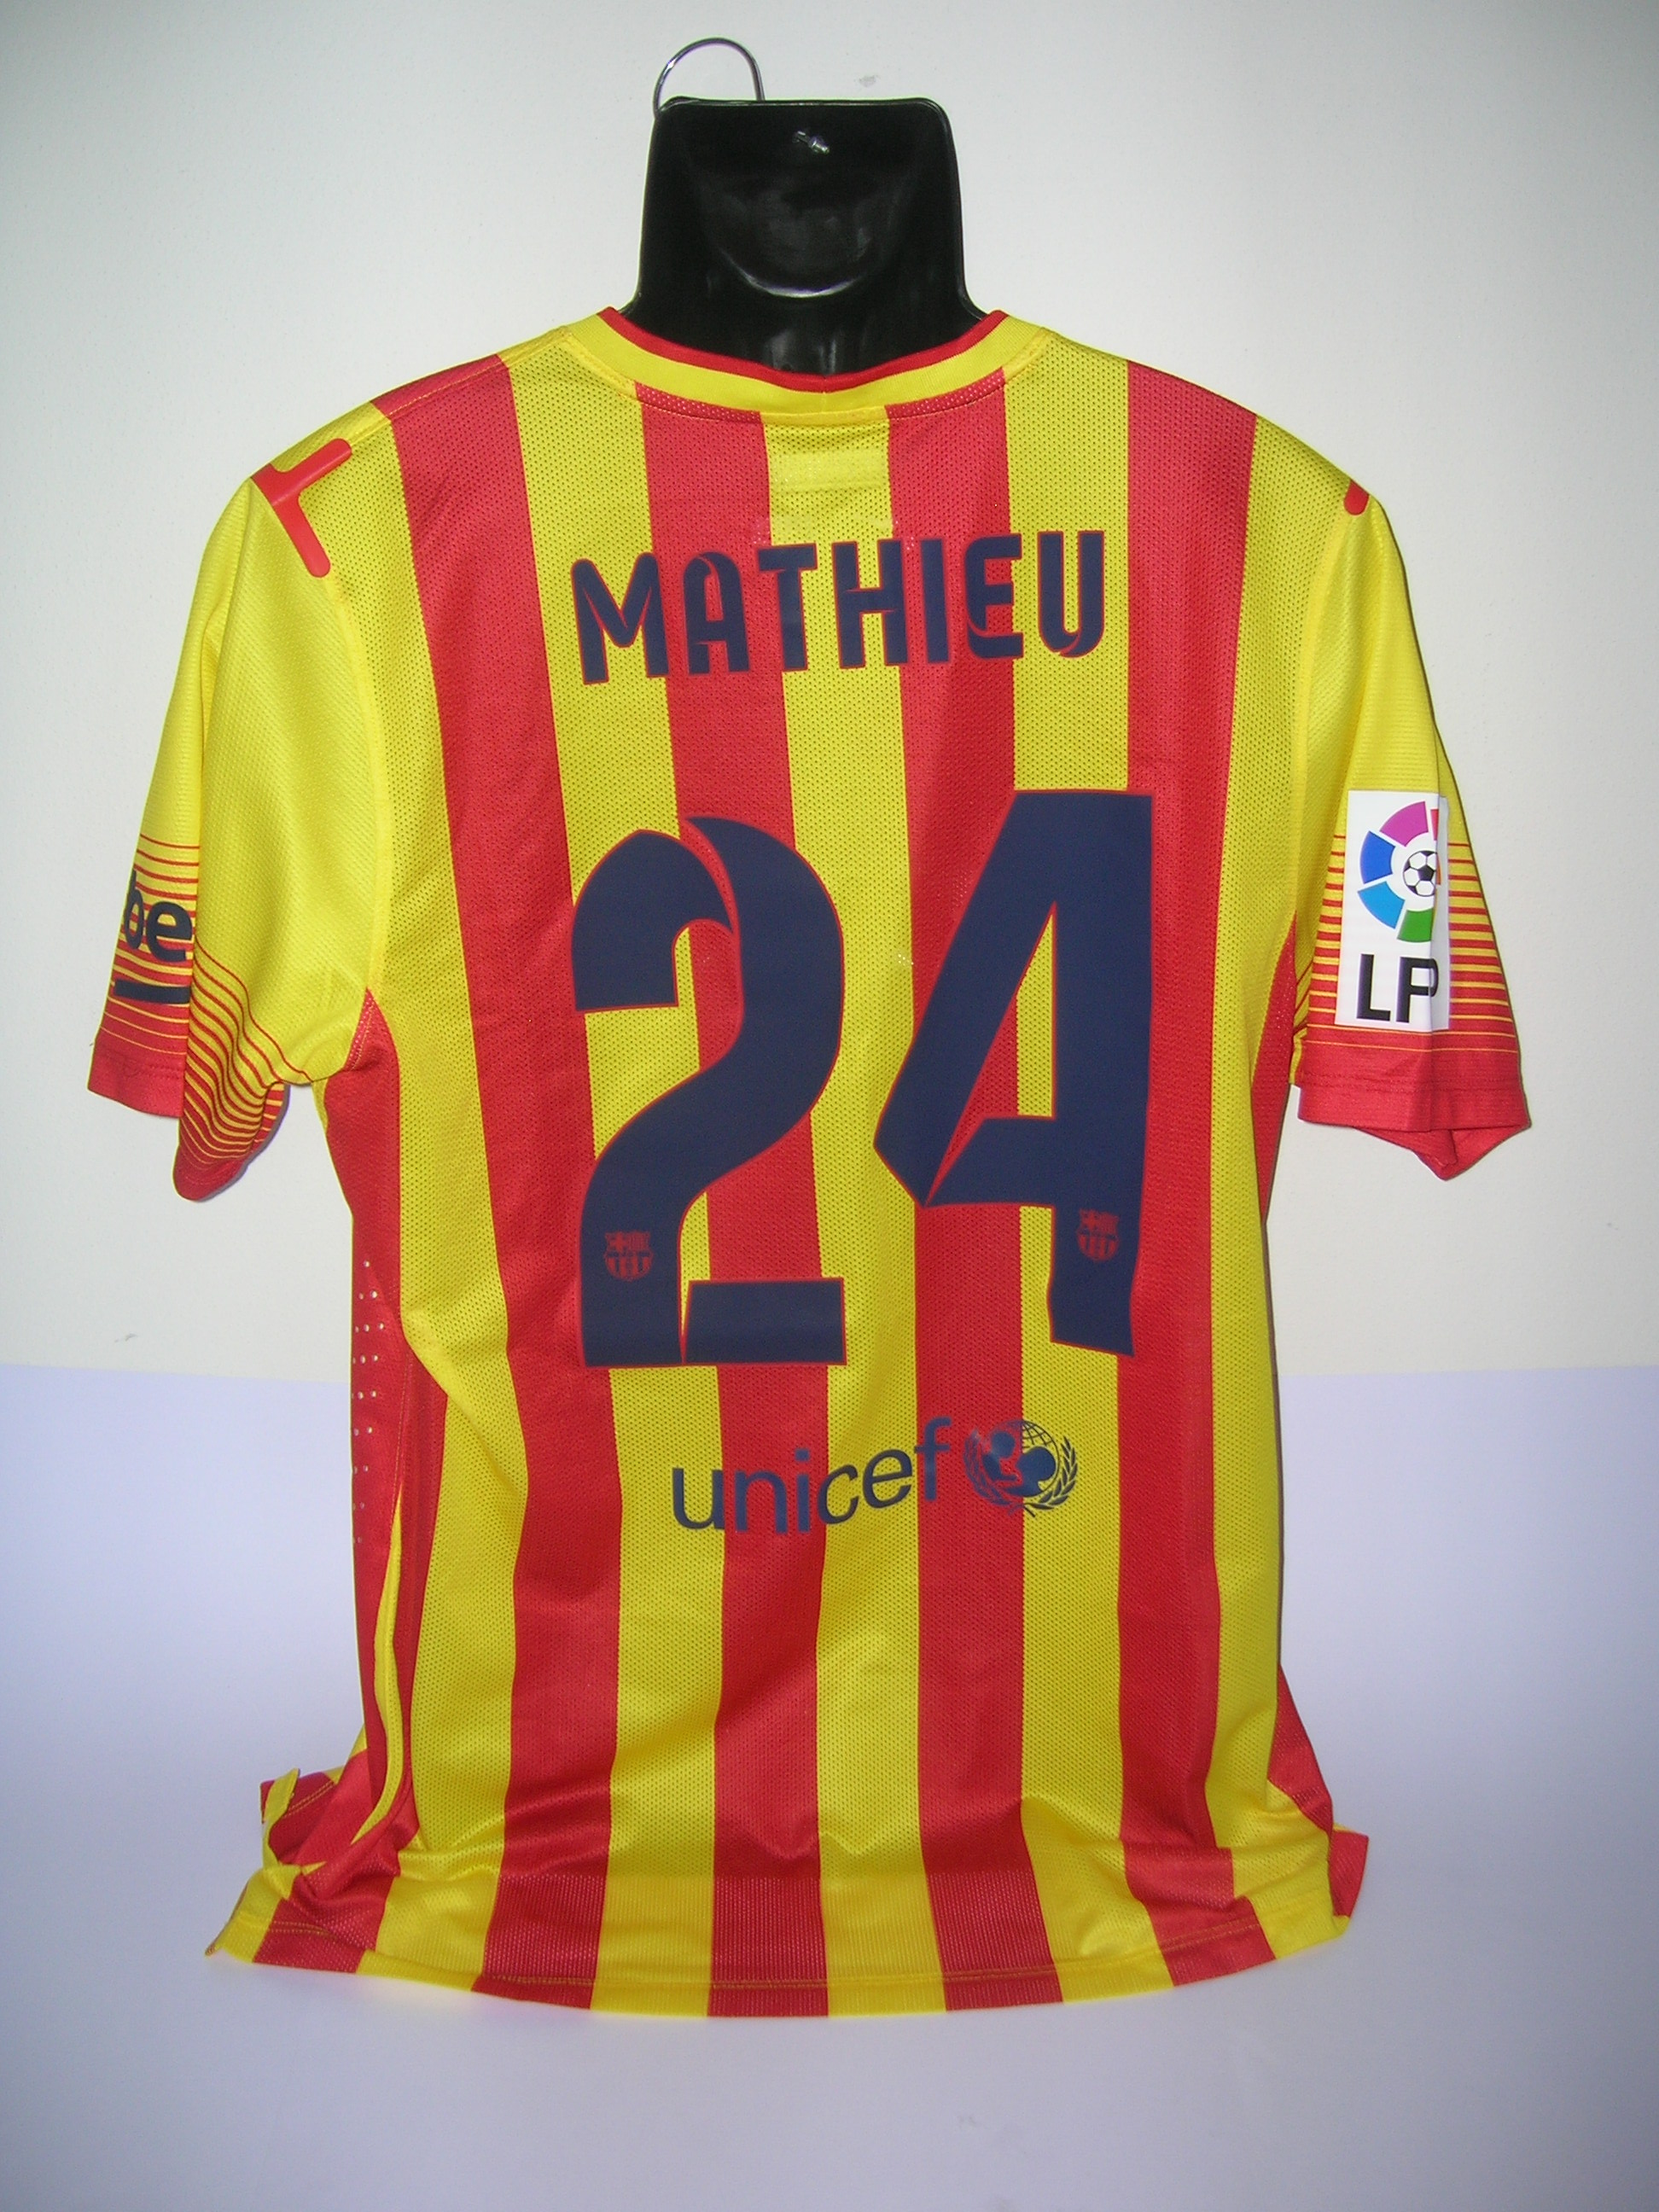 Mathieu 24 - Barcelona 2014-15 A